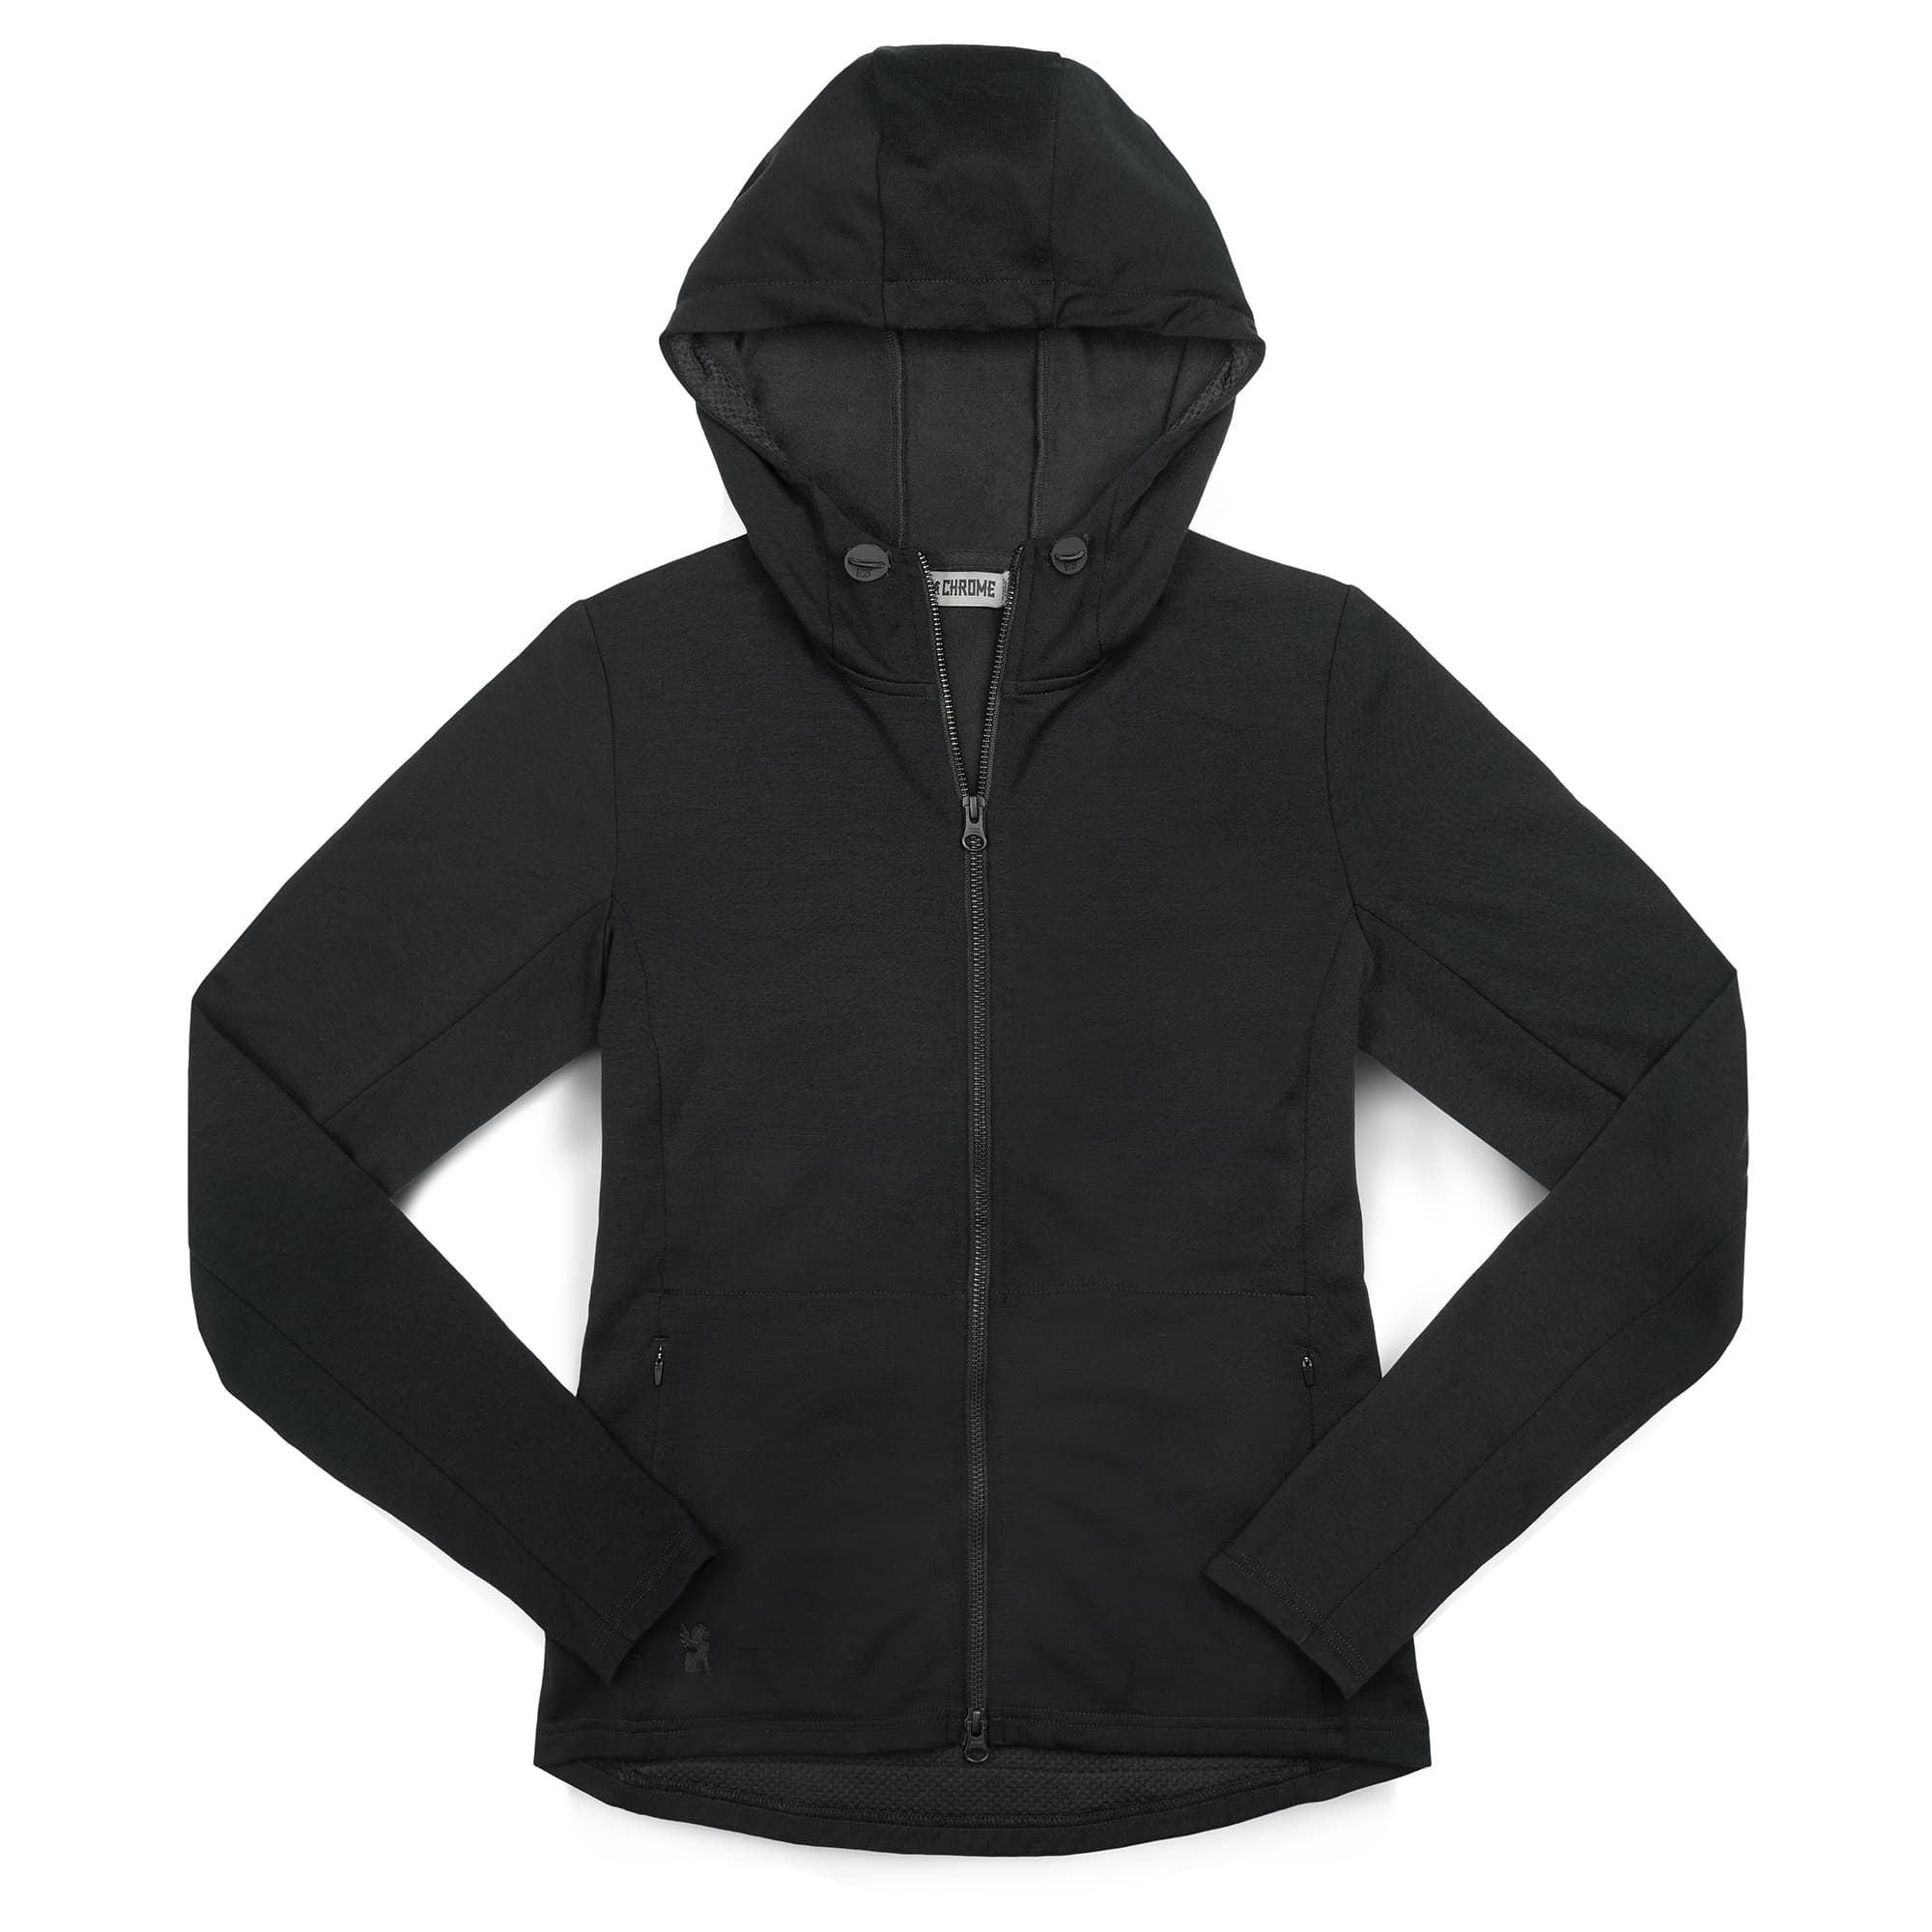 Women's Merino blend performance hoodie in black